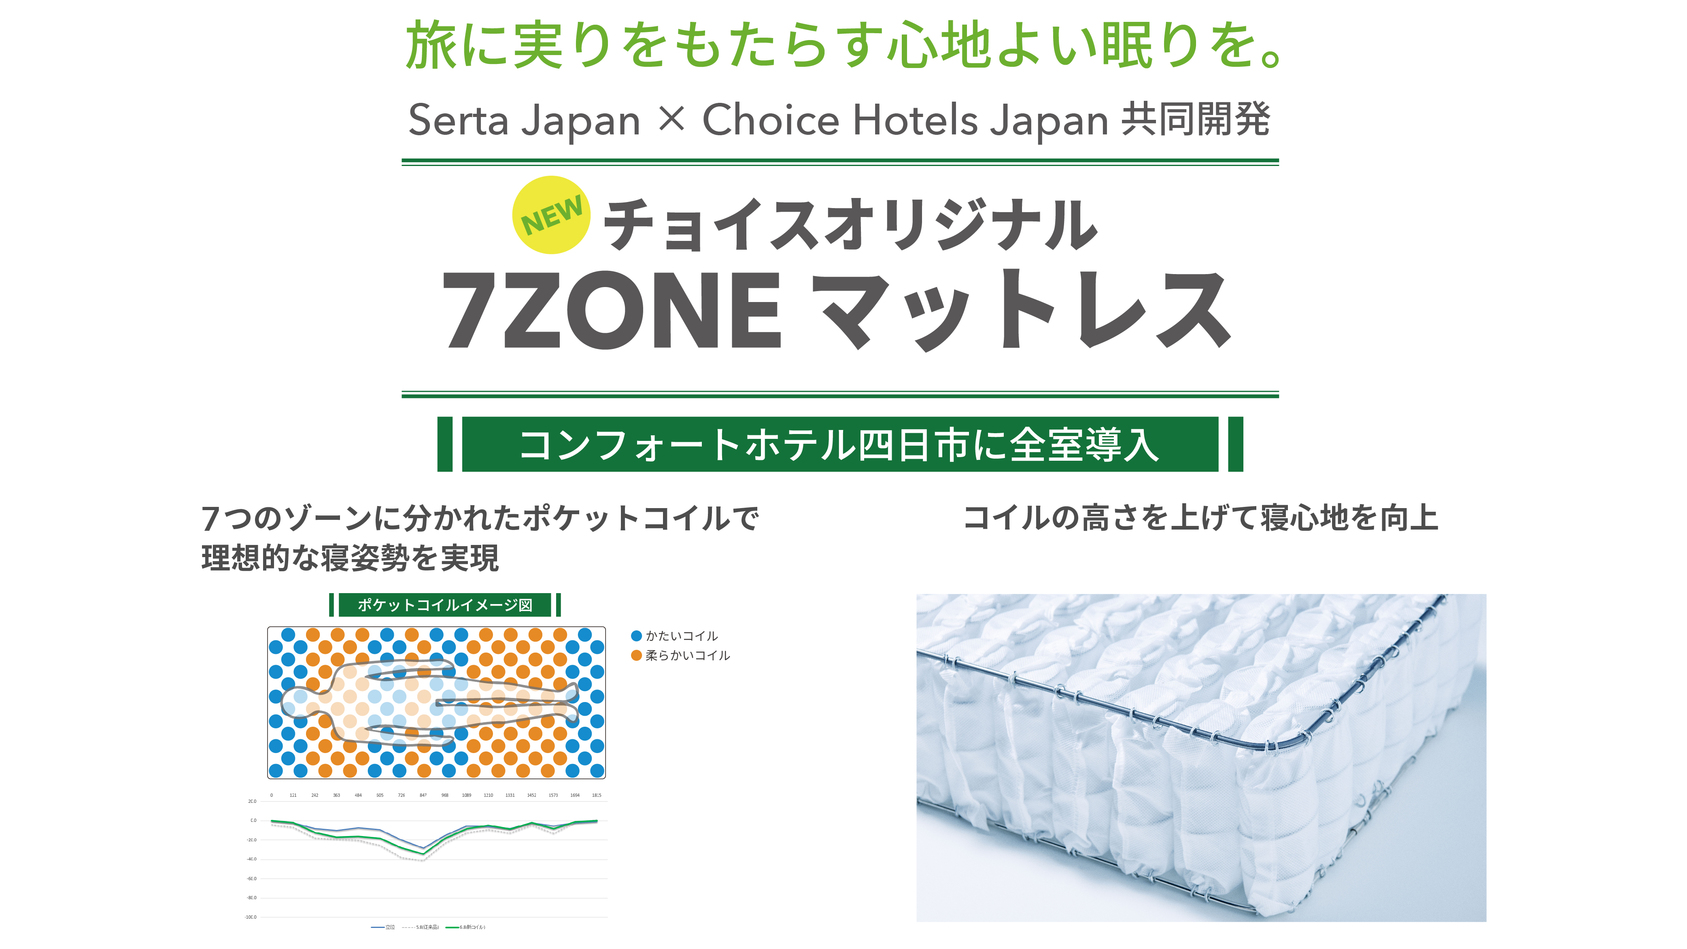 サータブランドと共同で新開発した「チョイス 7ZONE マットレス」を全室導入、理想の寝姿勢を実現。